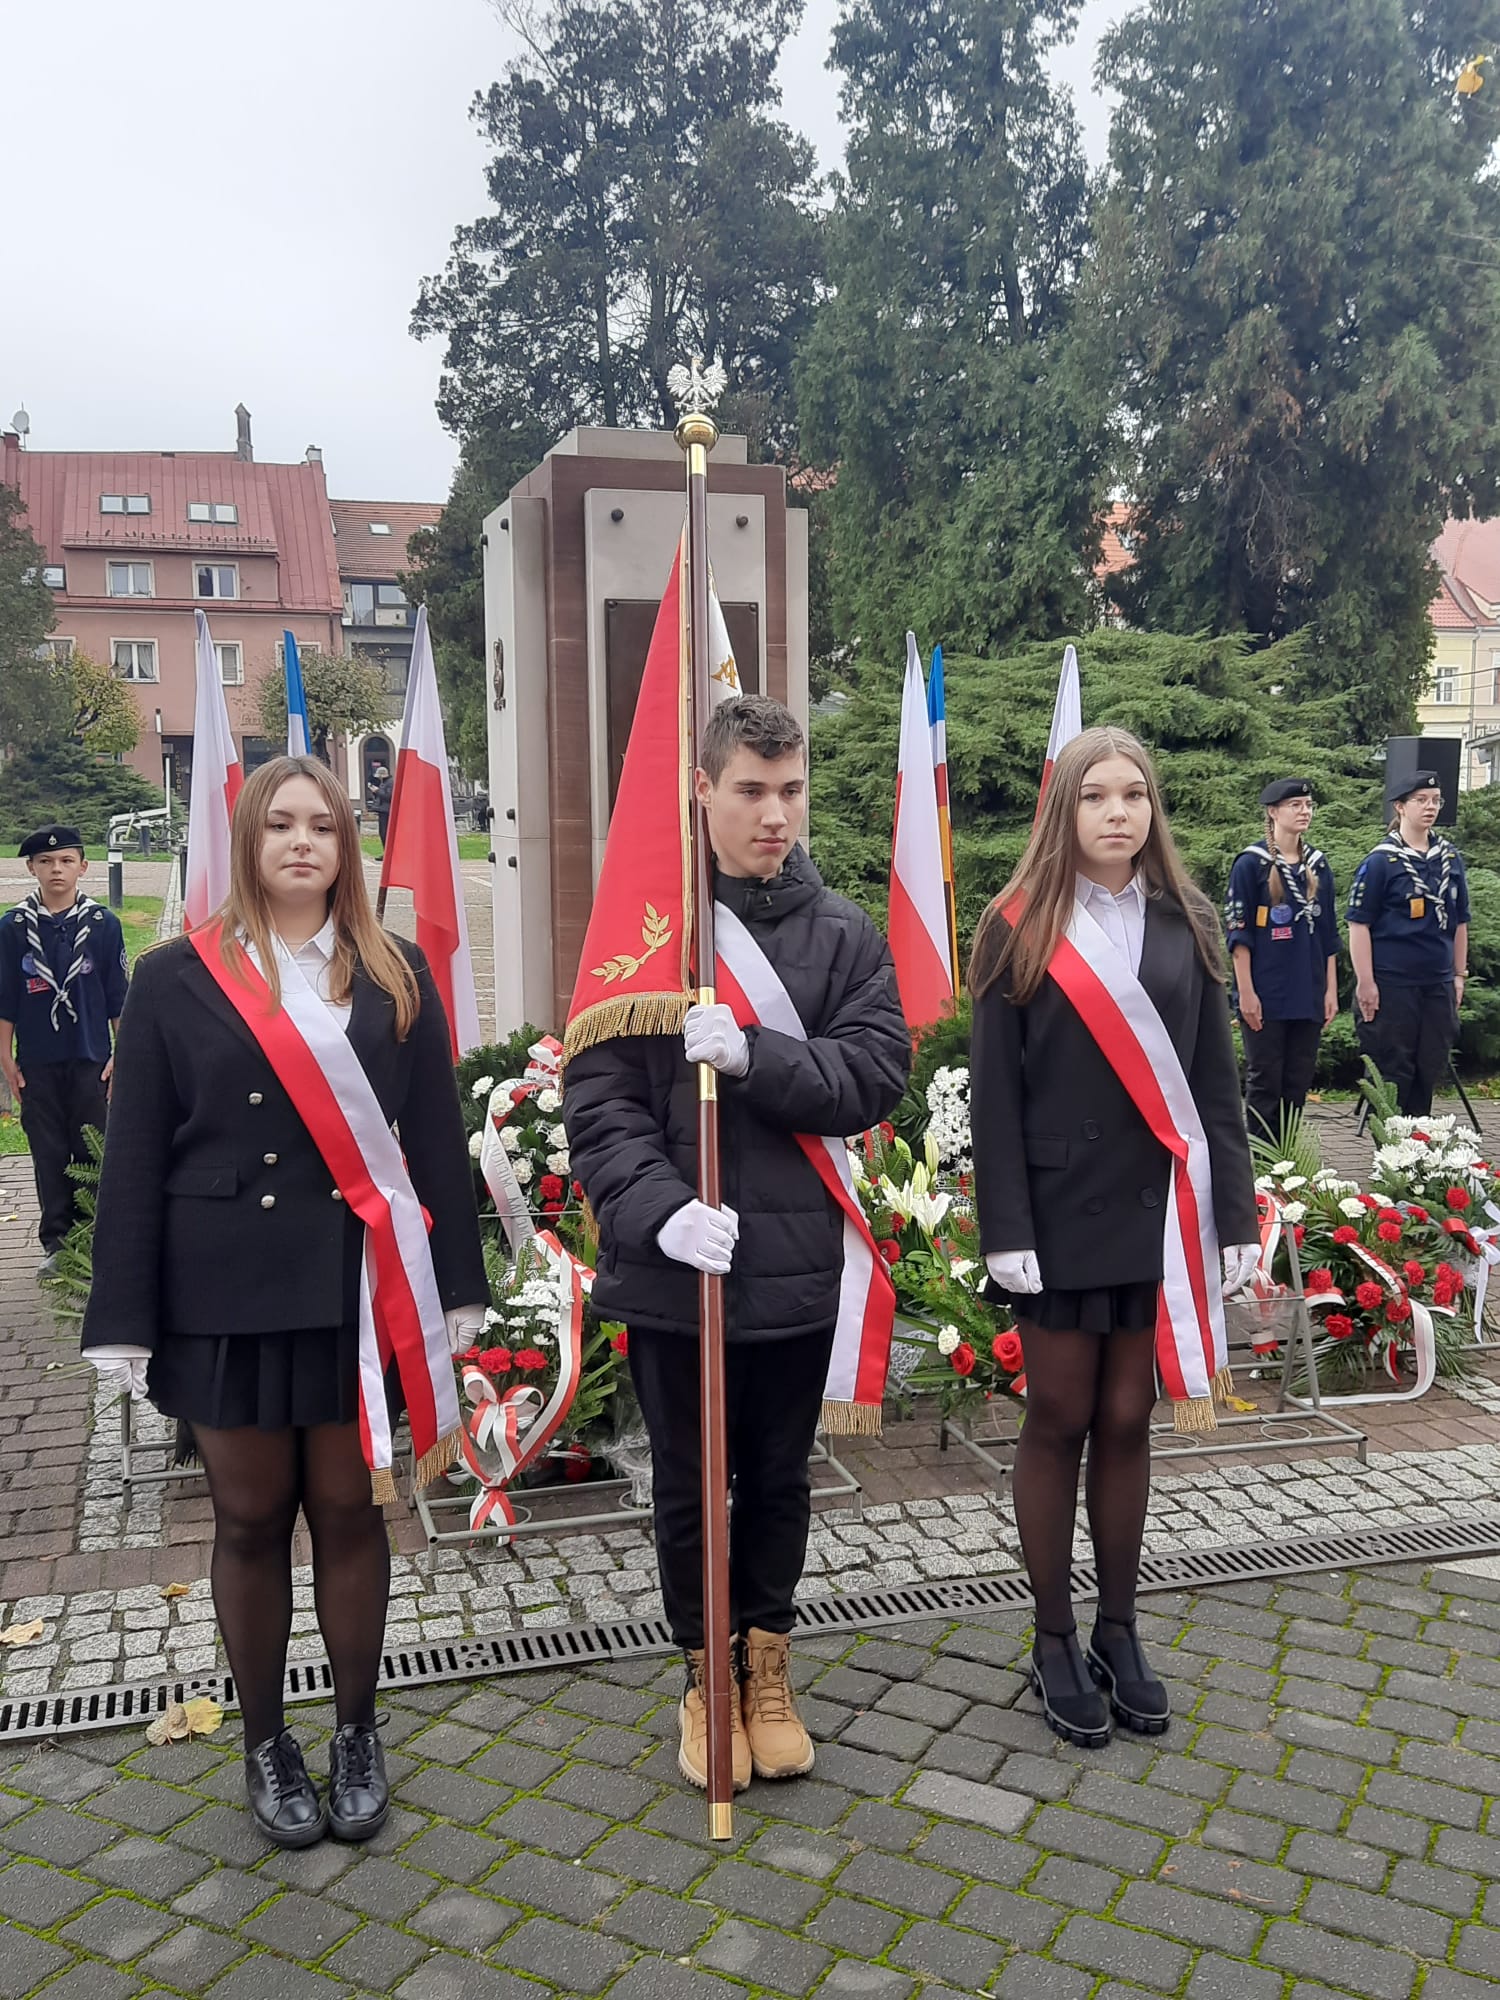 Na zdjęciu widać poczet sztandarowy na tle pomnika Pamięci Walczących o Wolną Polskę. Chorąży trzyma sztandar szkoły.